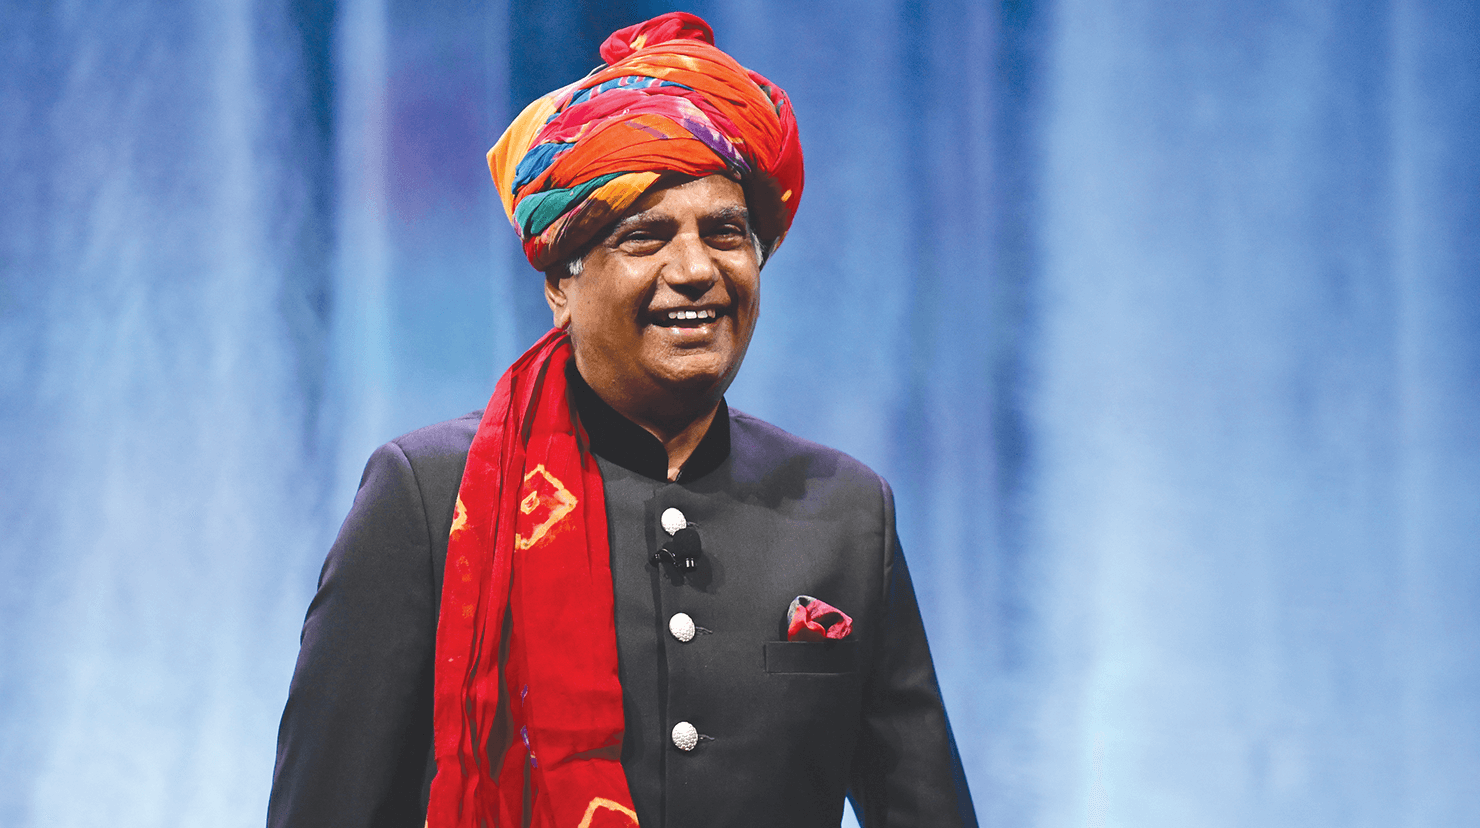 Toastmasters International President Deepak Menon smiling onstage